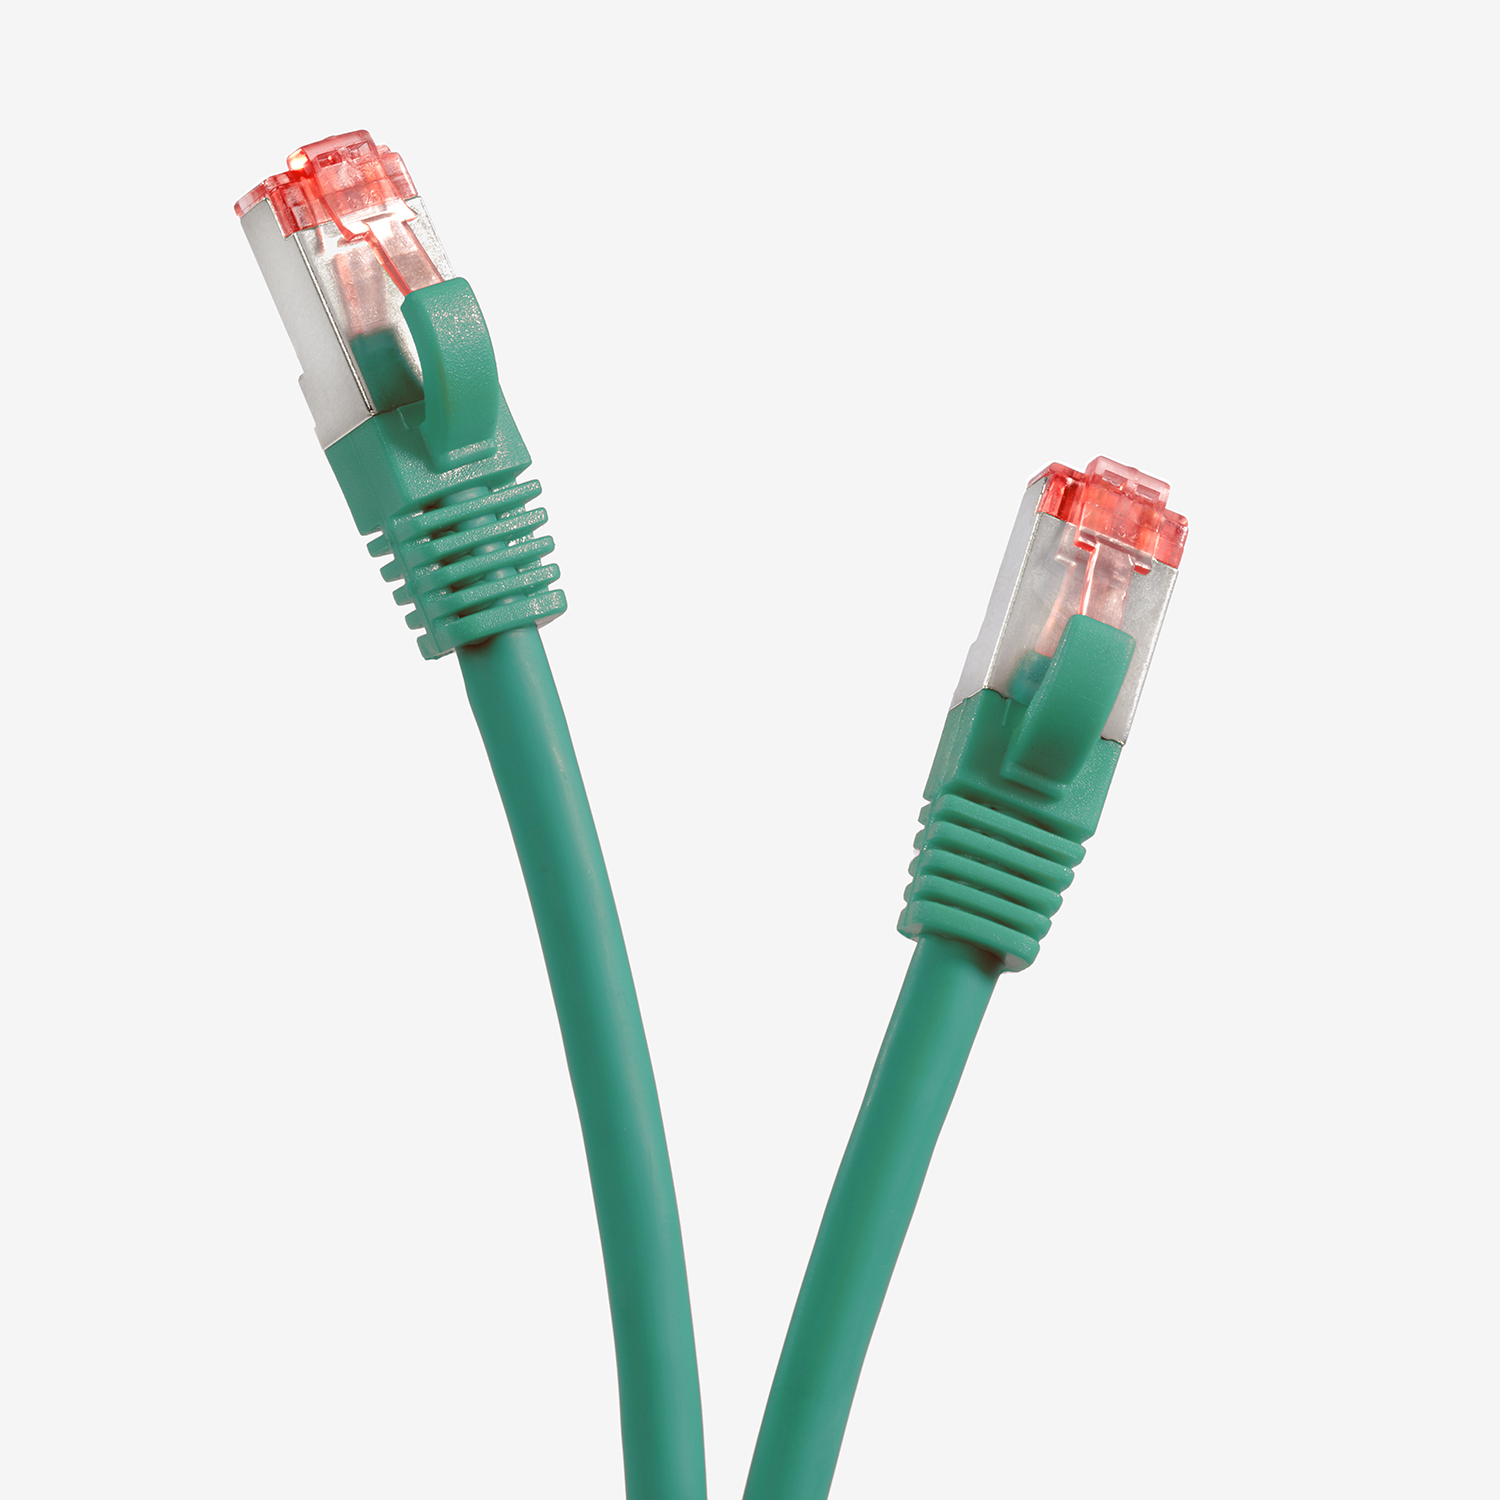 TPFNET 0,50m Patchkabel / Netzwerkkabel, 0,5 1000Mbit, Netzwerkkabel m S/FTP grün